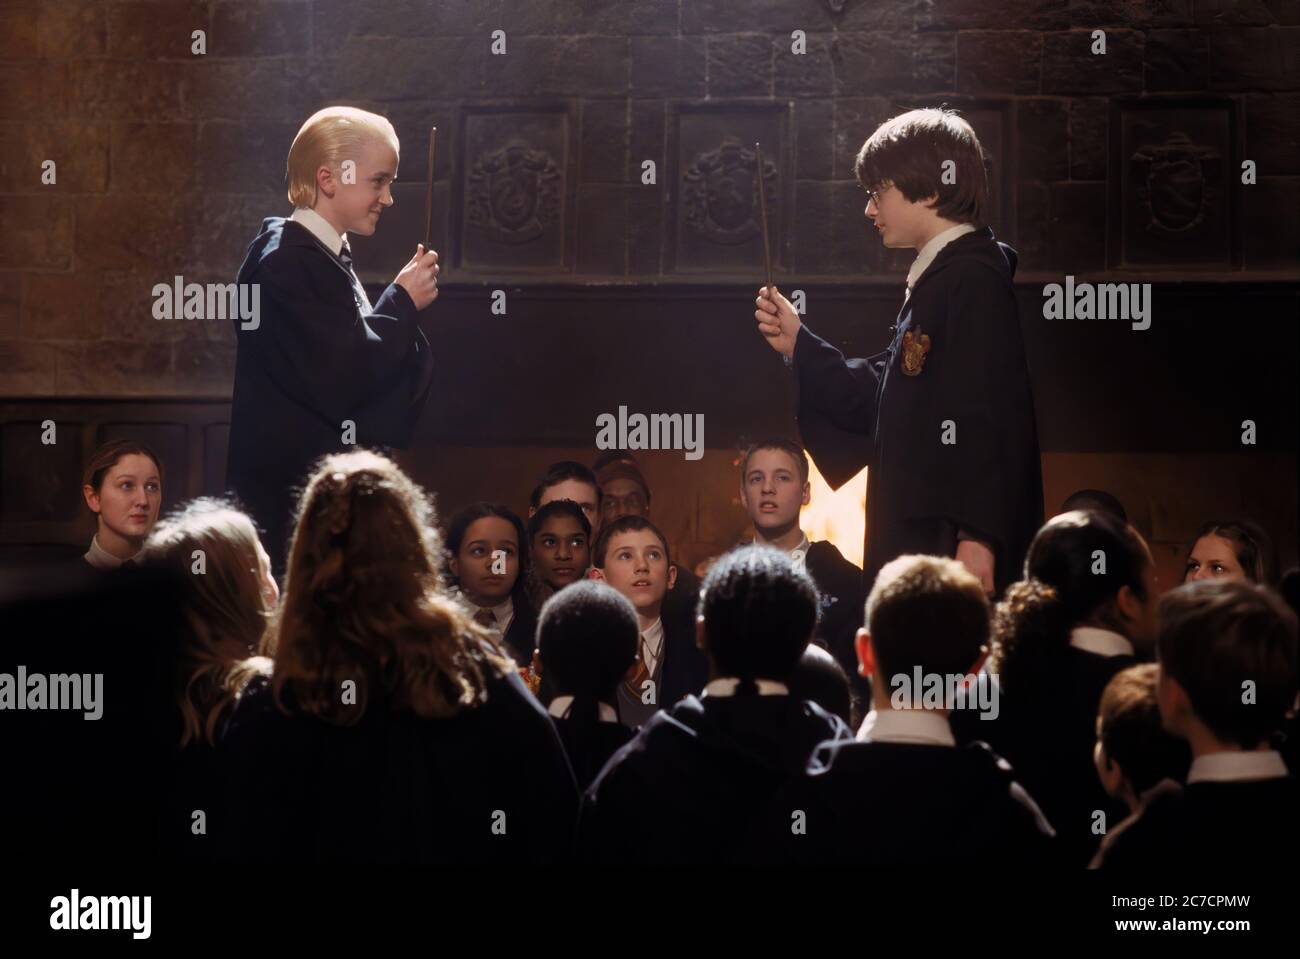 Daniel Radcliffe et Tom Felton dans Harry Potter et la Chambre des secrets - image de film promotionnel Banque D'Images